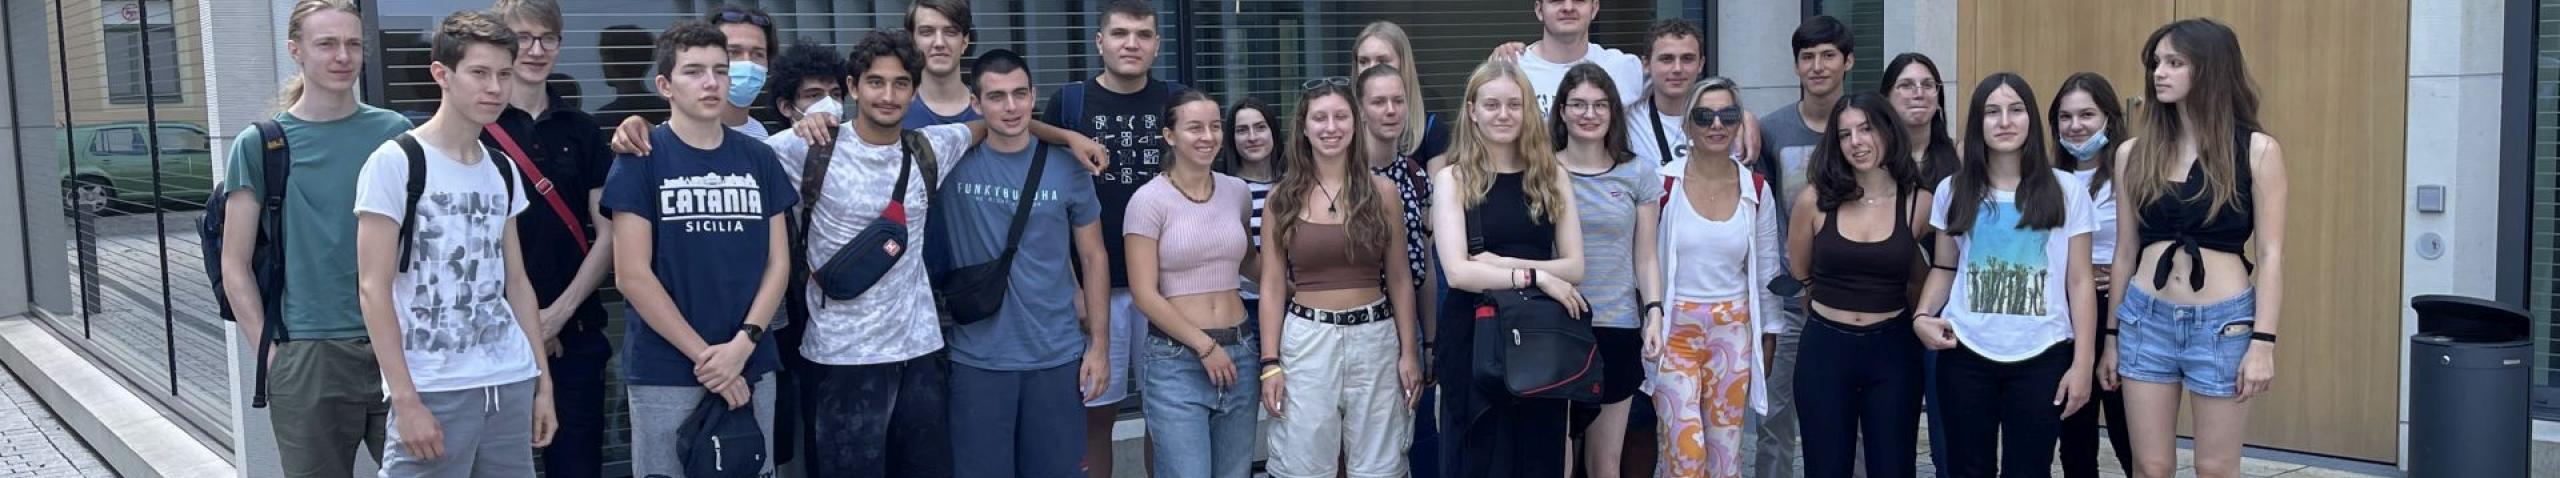 Γνωριμία και εξοικείωση με την επιστημονική εργασία: Μαθητικό Camp στο Πολυτεχνείο του Freiberg - Συνάντηση με το Γυμνάσιο Geschwister-Scholl